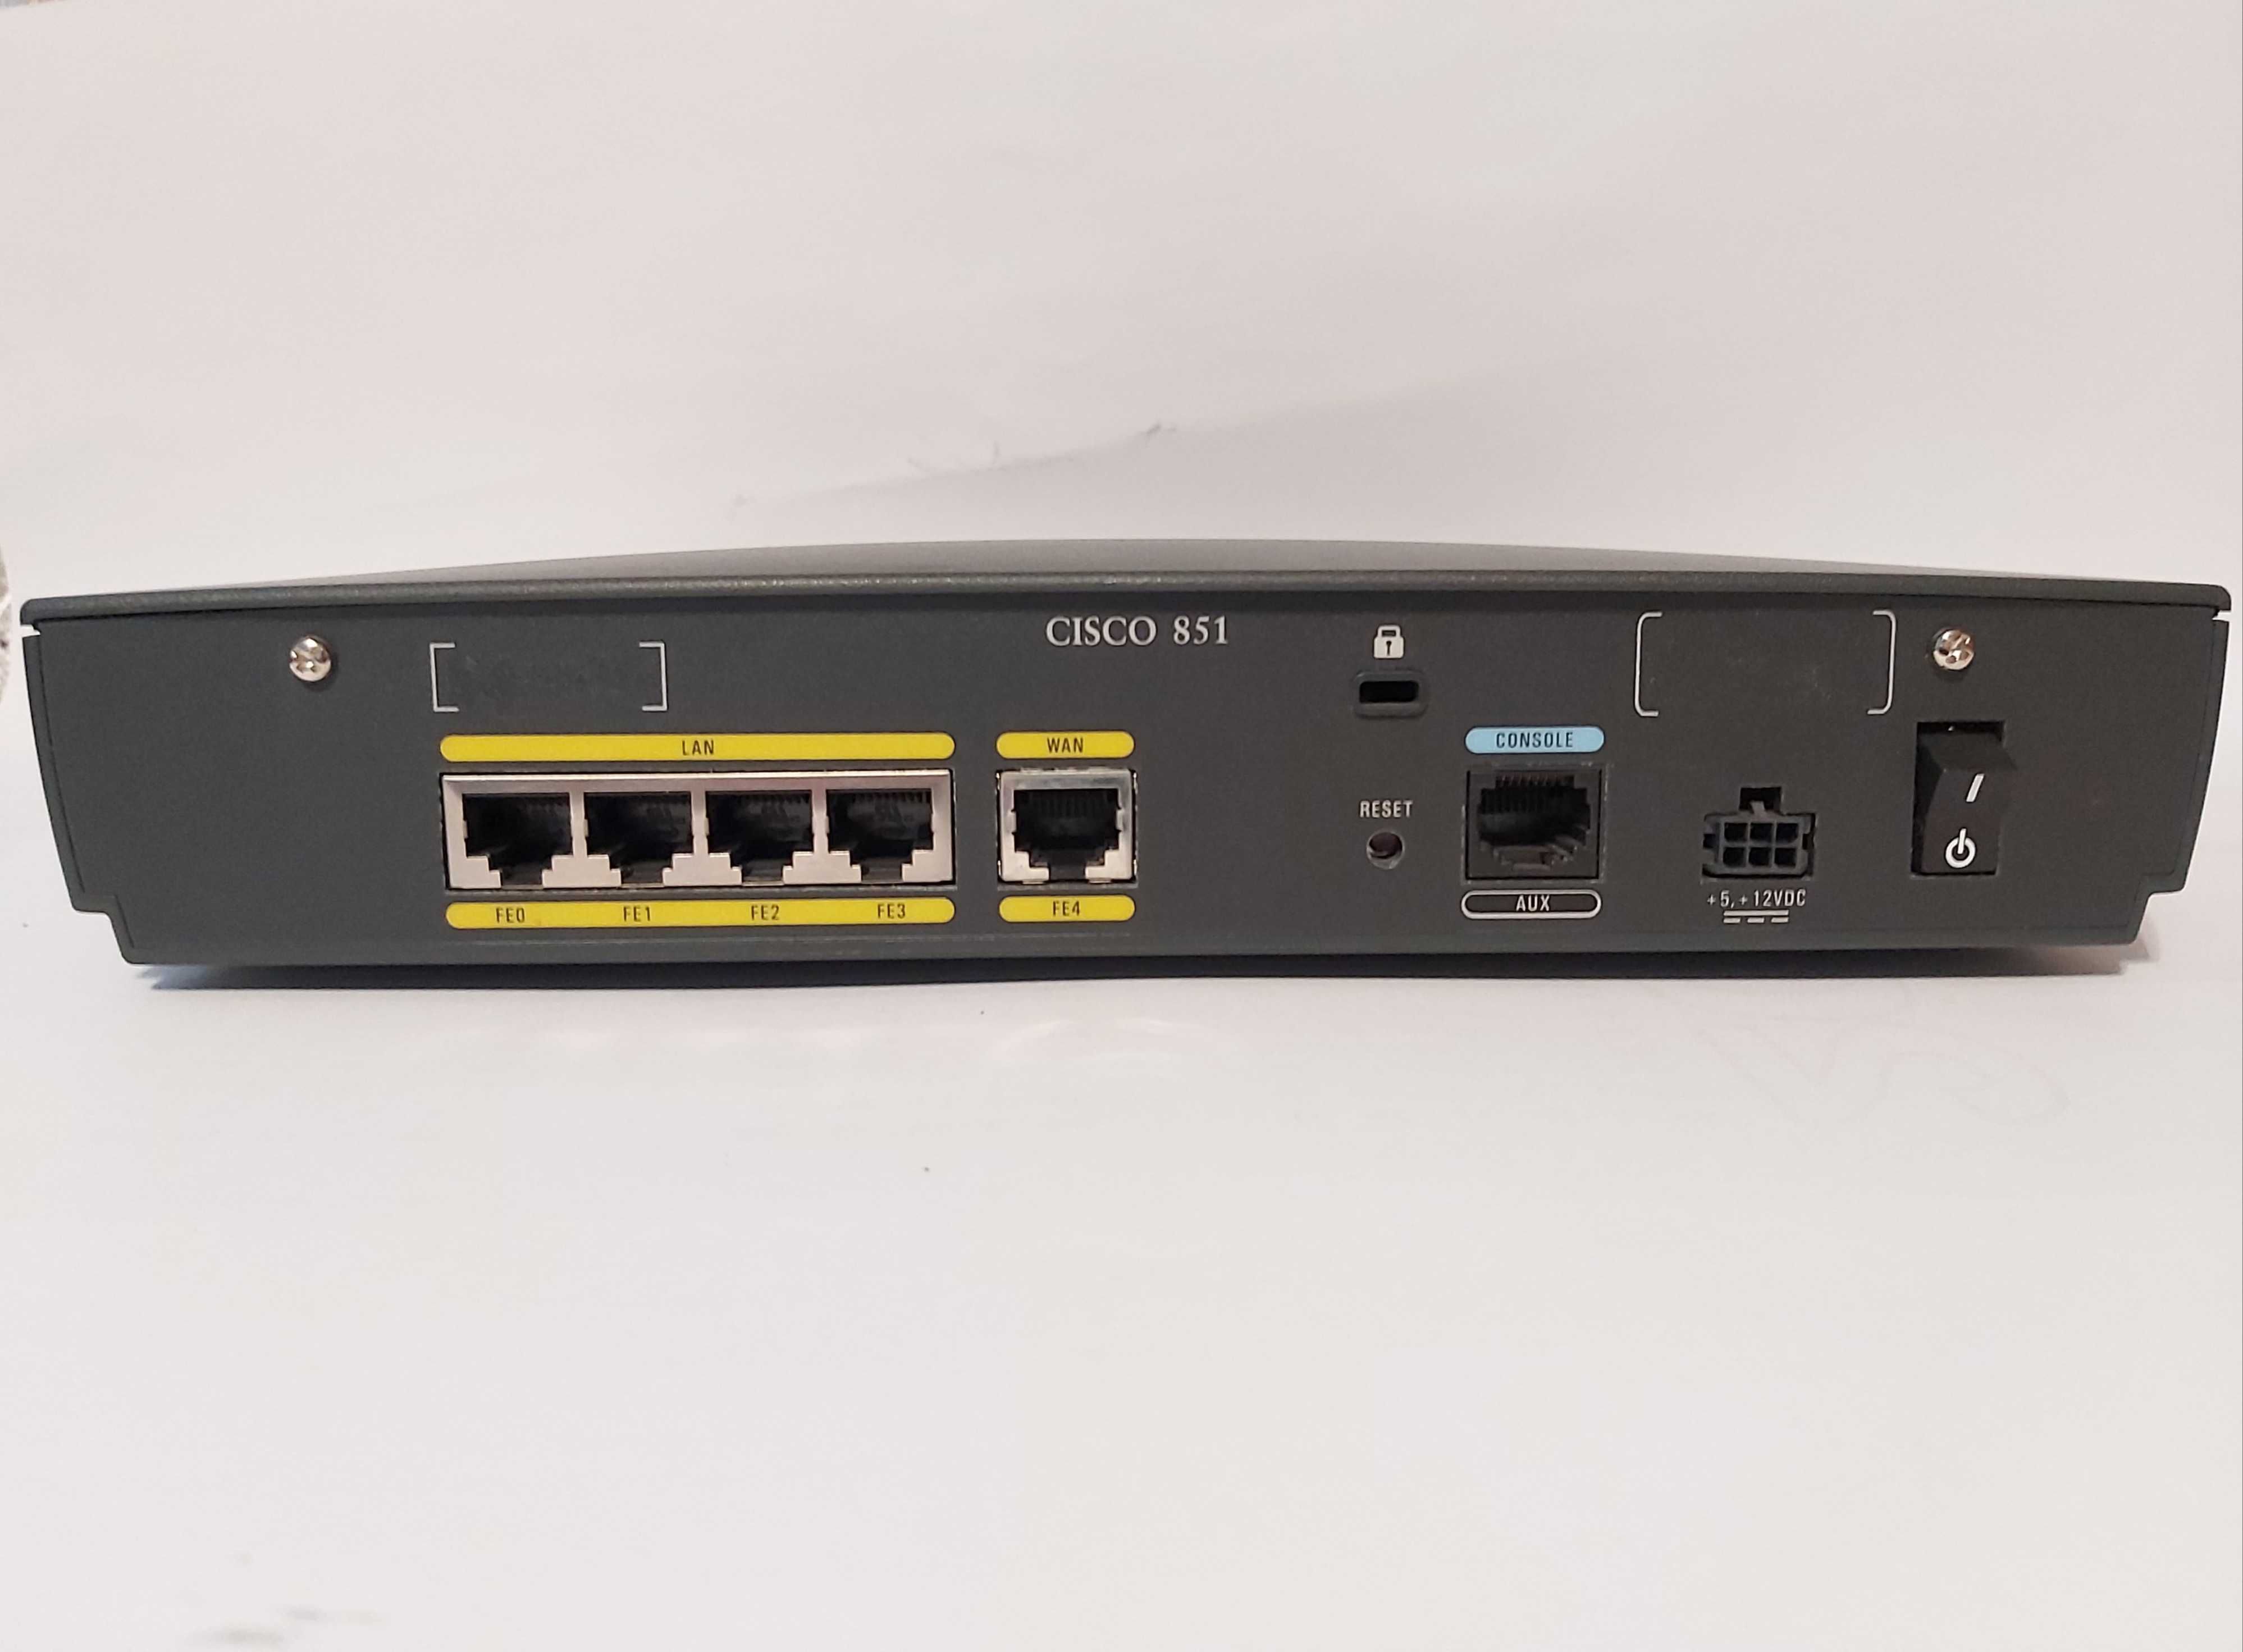 Cisco 851 series